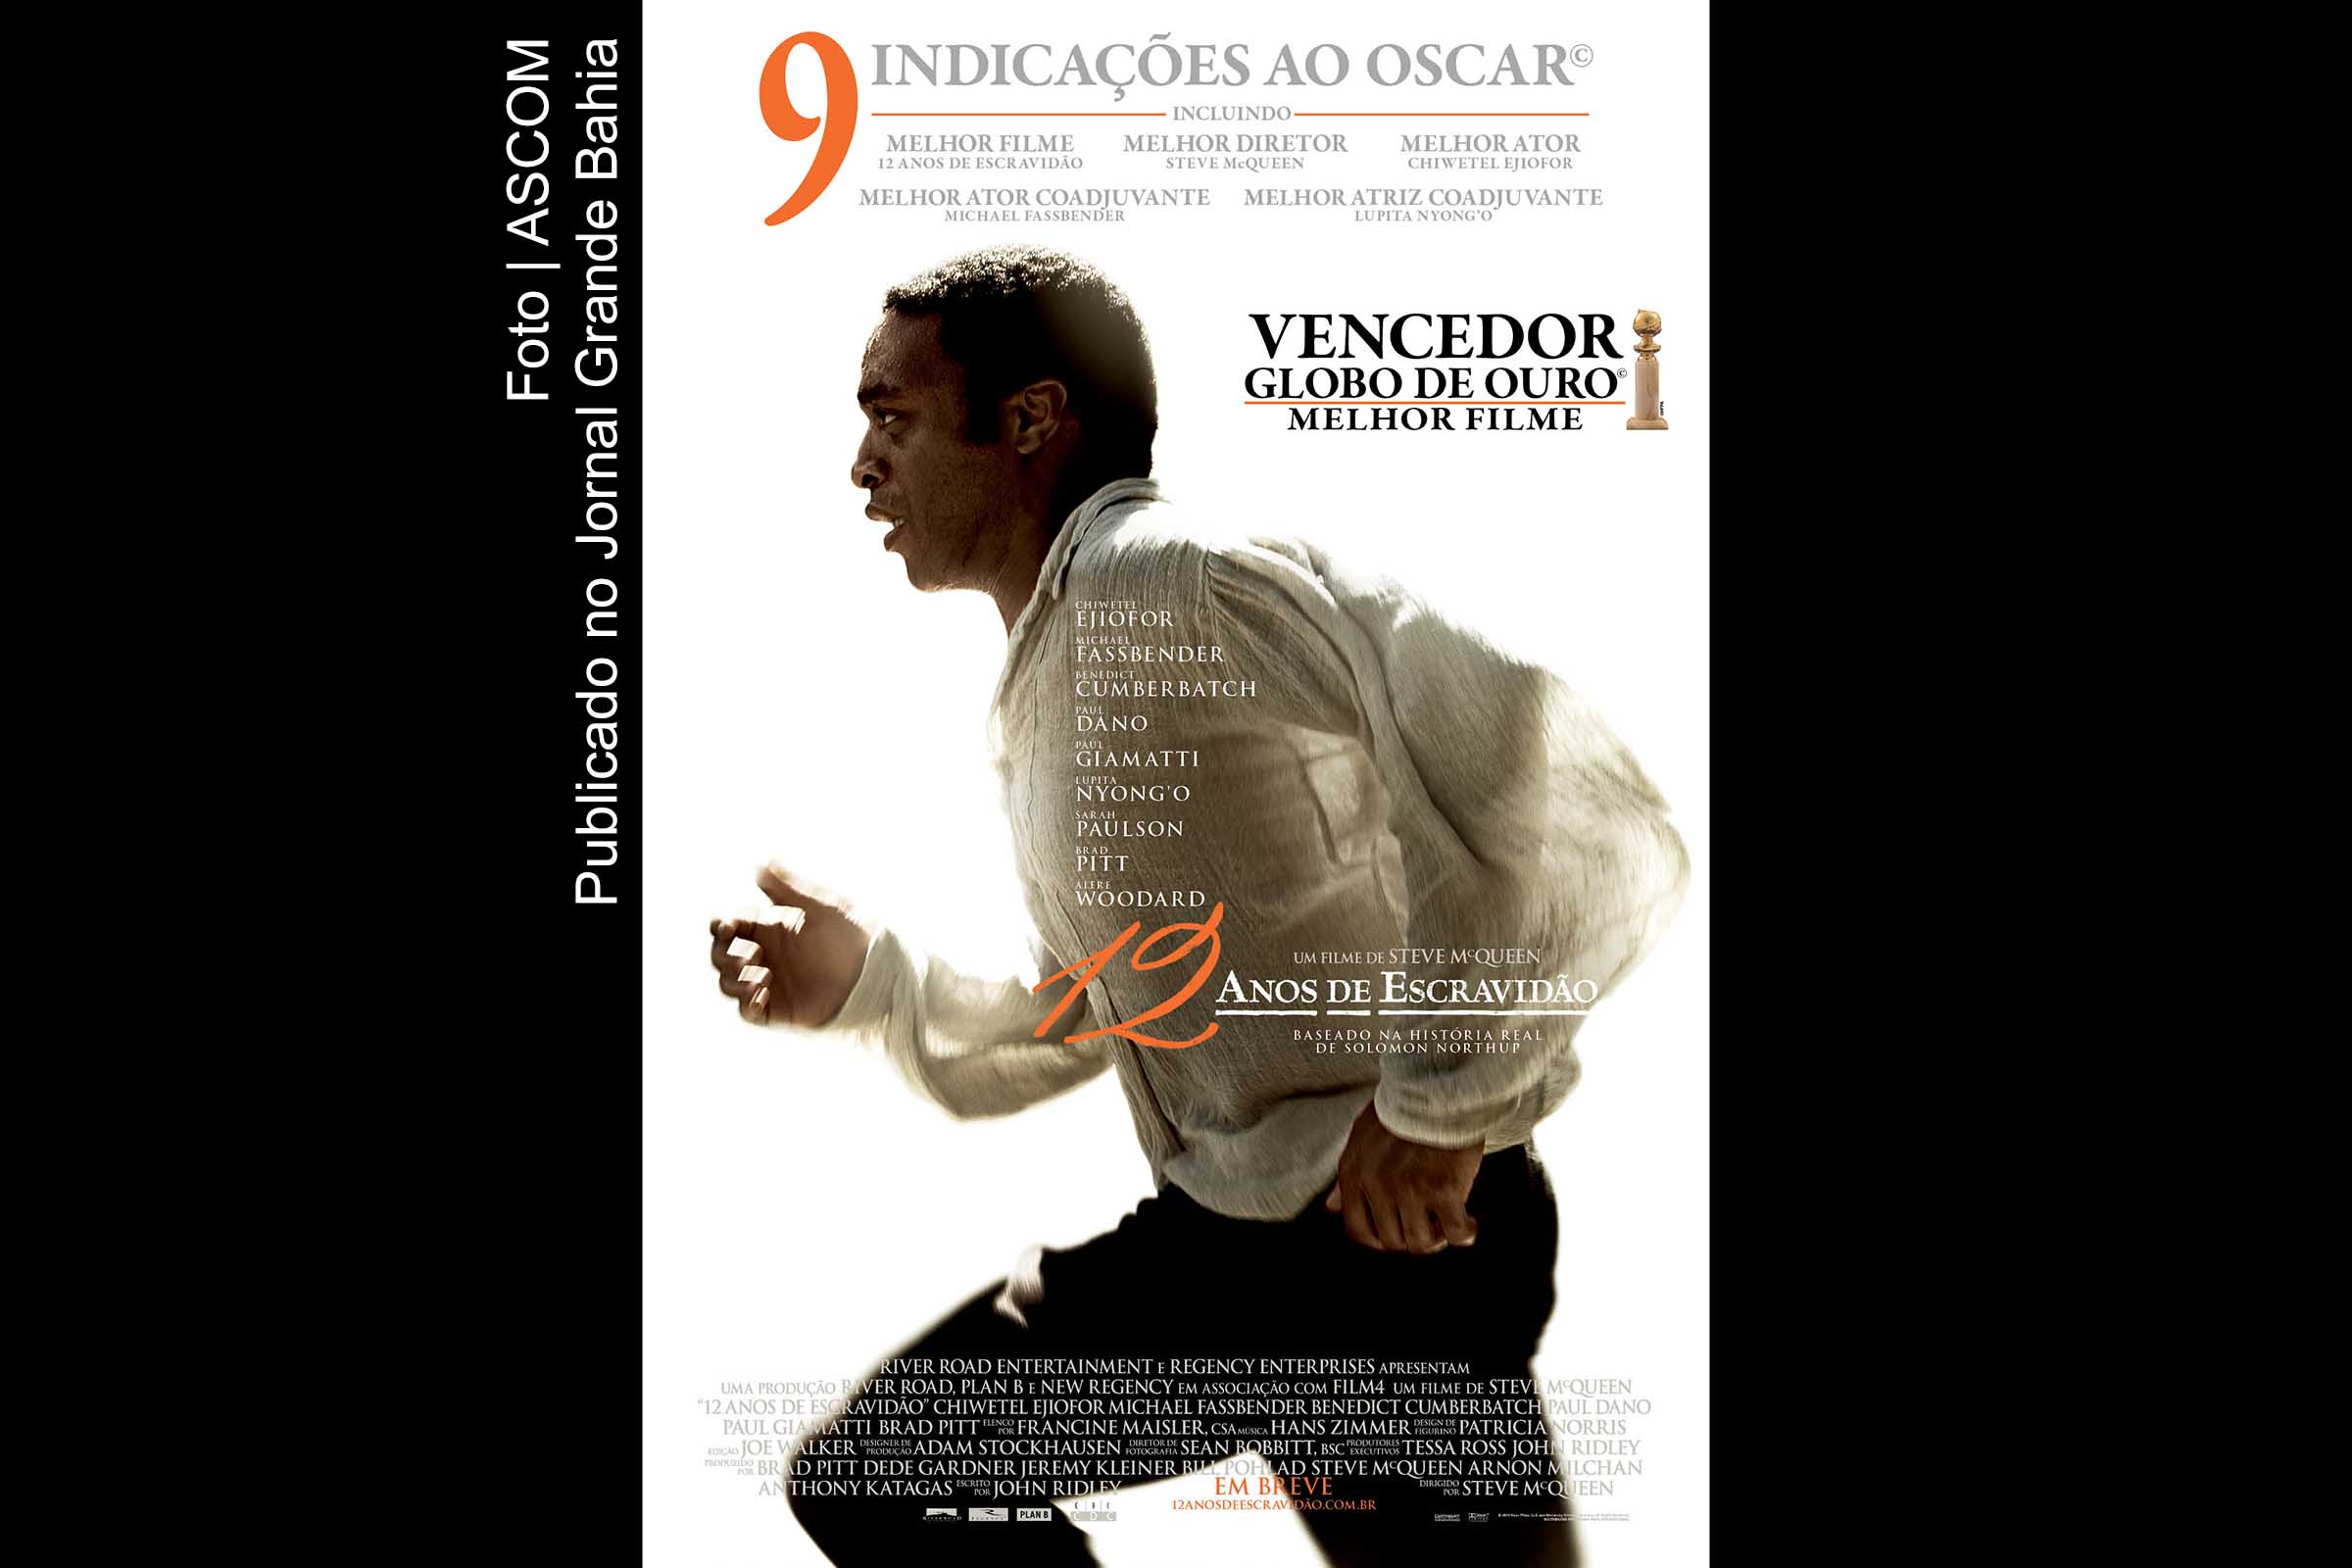 Cartaz do filme 'Sou escrava' (I Am Slave)Cartaz do filme 'Sou escrava' (I Am Slave).